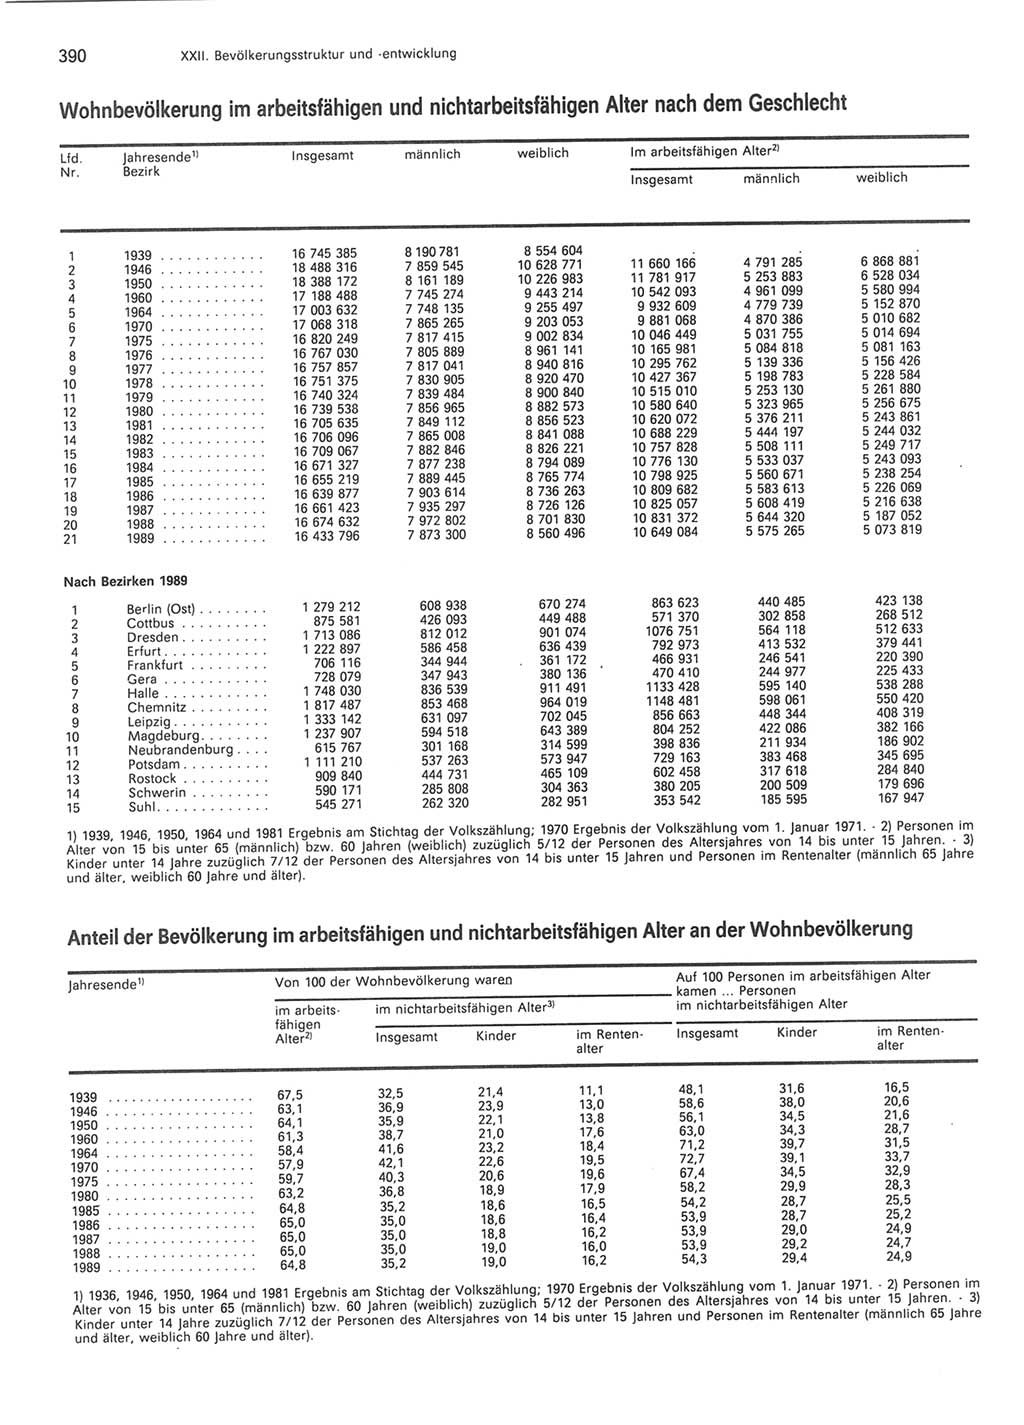 Statistisches Jahrbuch der Deutschen Demokratischen Republik (DDR) 1990, Seite 390 (Stat. Jb. DDR 1990, S. 390)